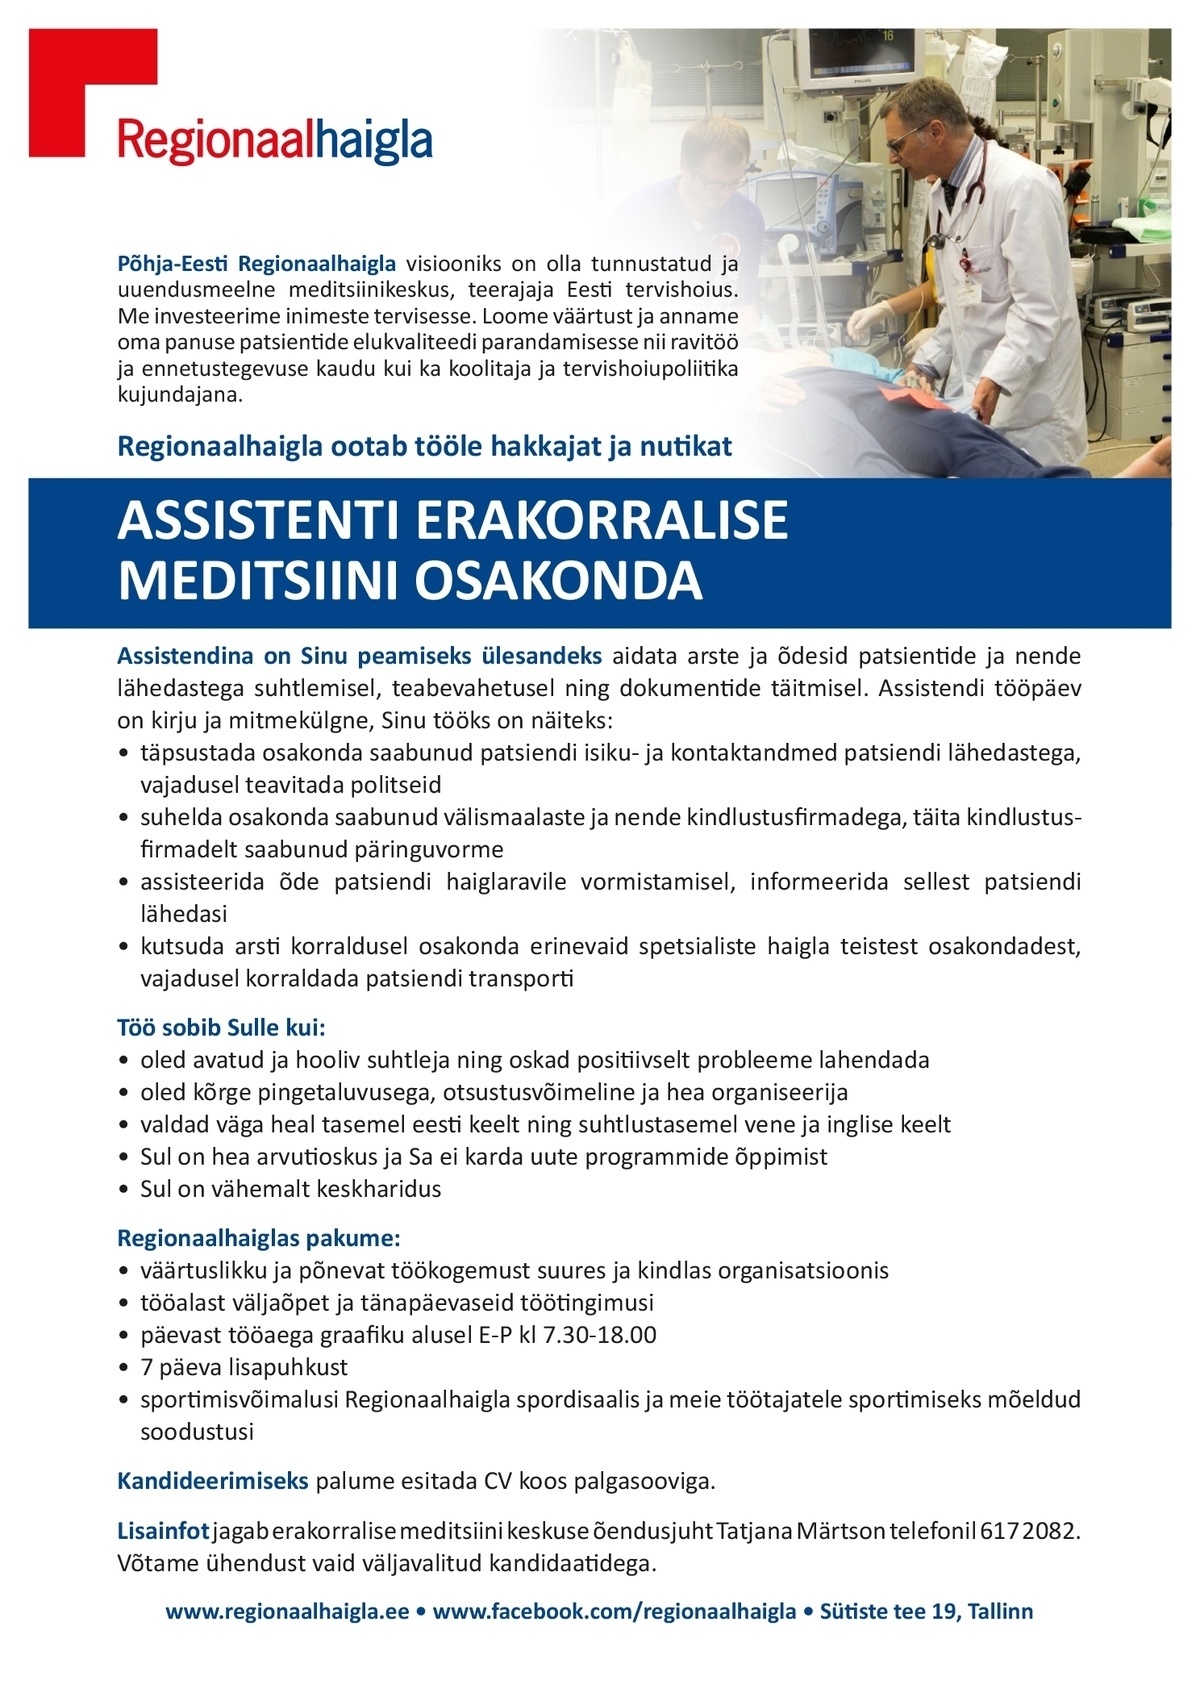 Põhja-Eesti Regionaalhaigla SA Assistent erakorralise meditsiini osakonda